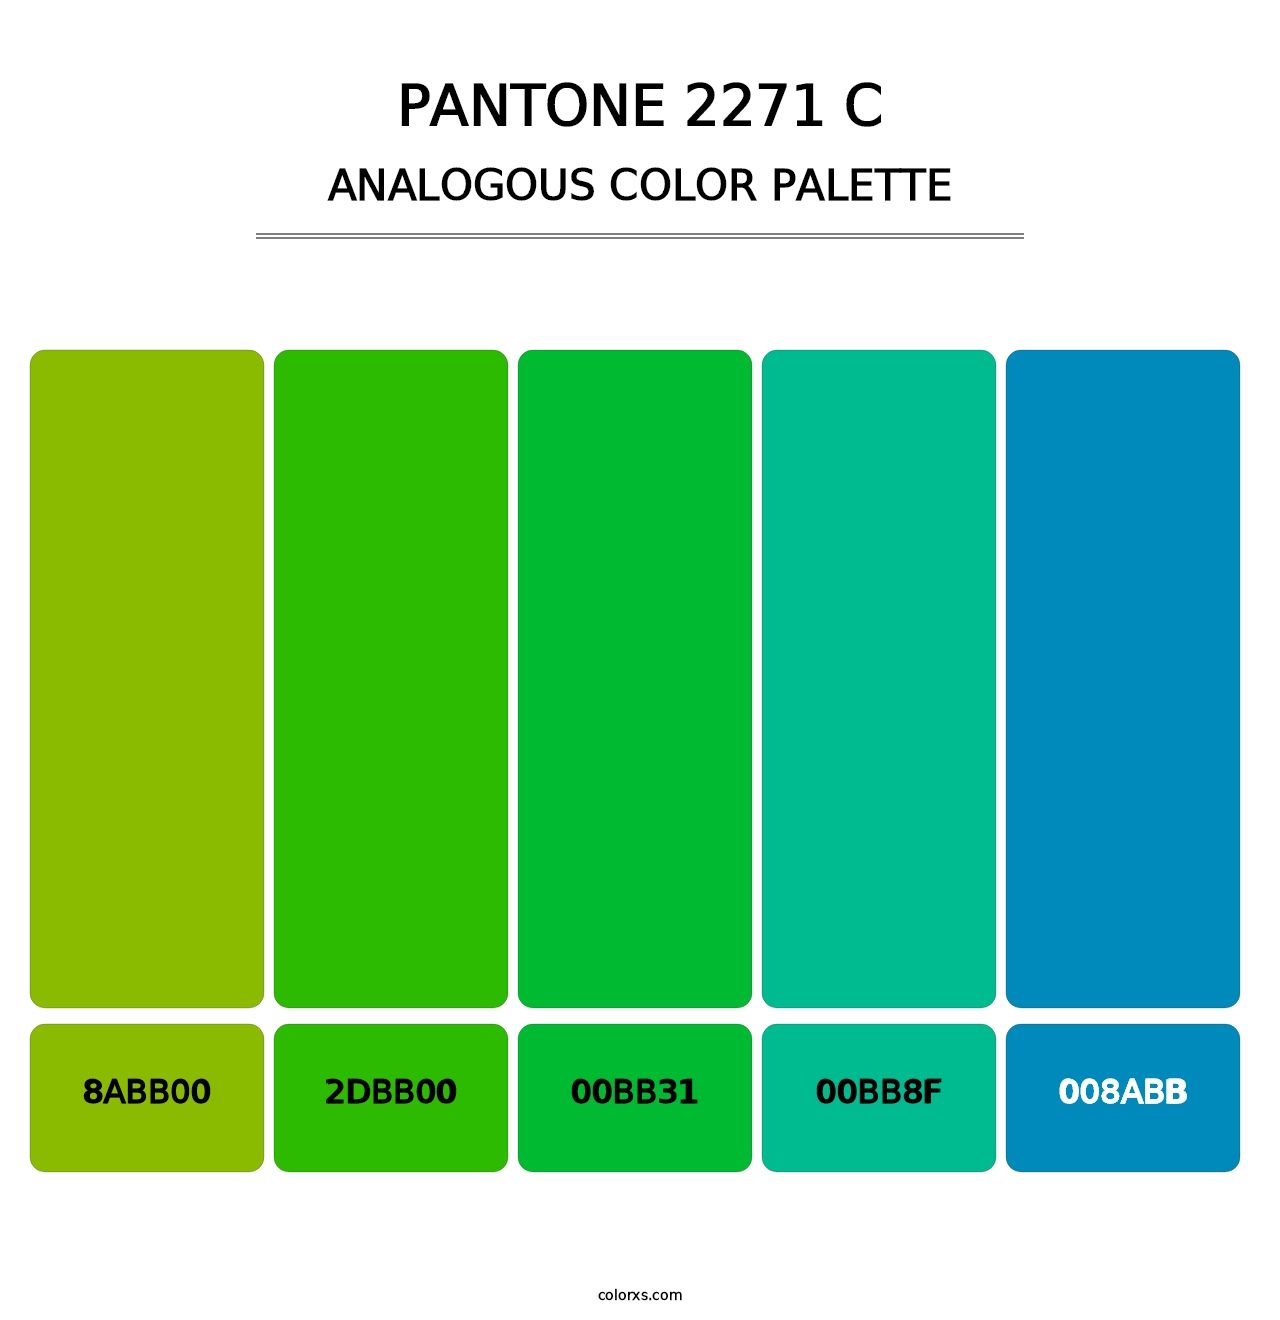 PANTONE 2271 C - Analogous Color Palette